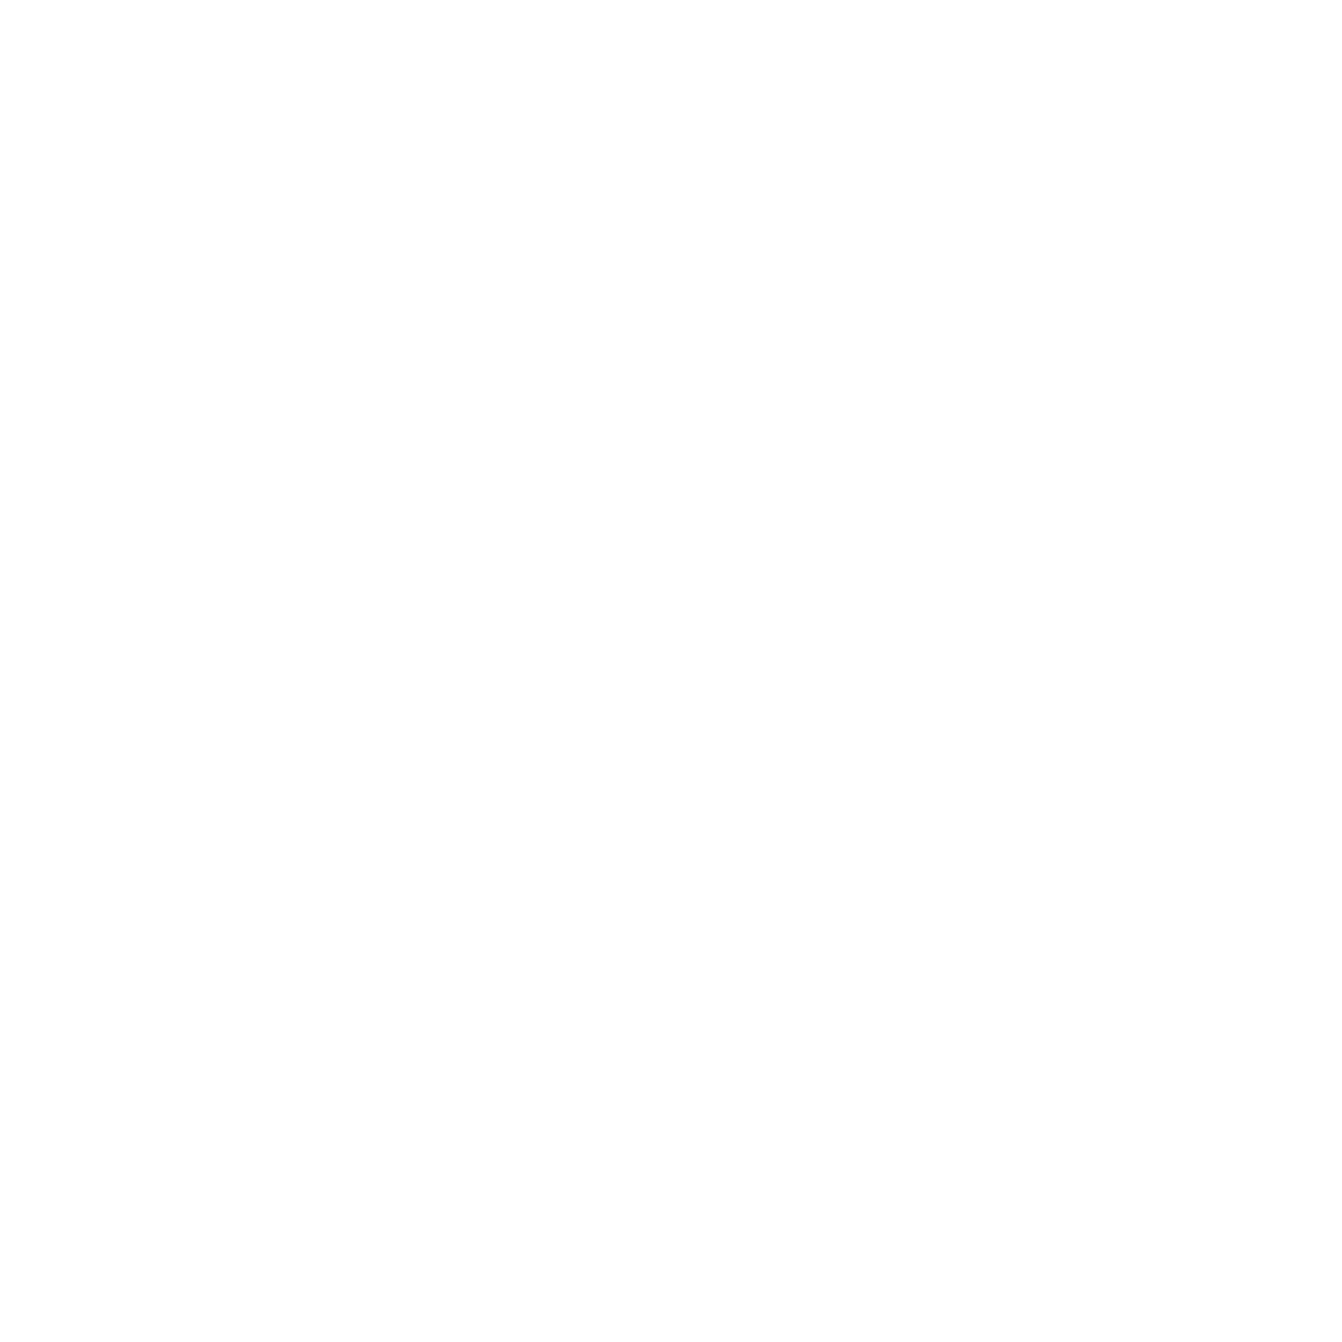 LagreeCore